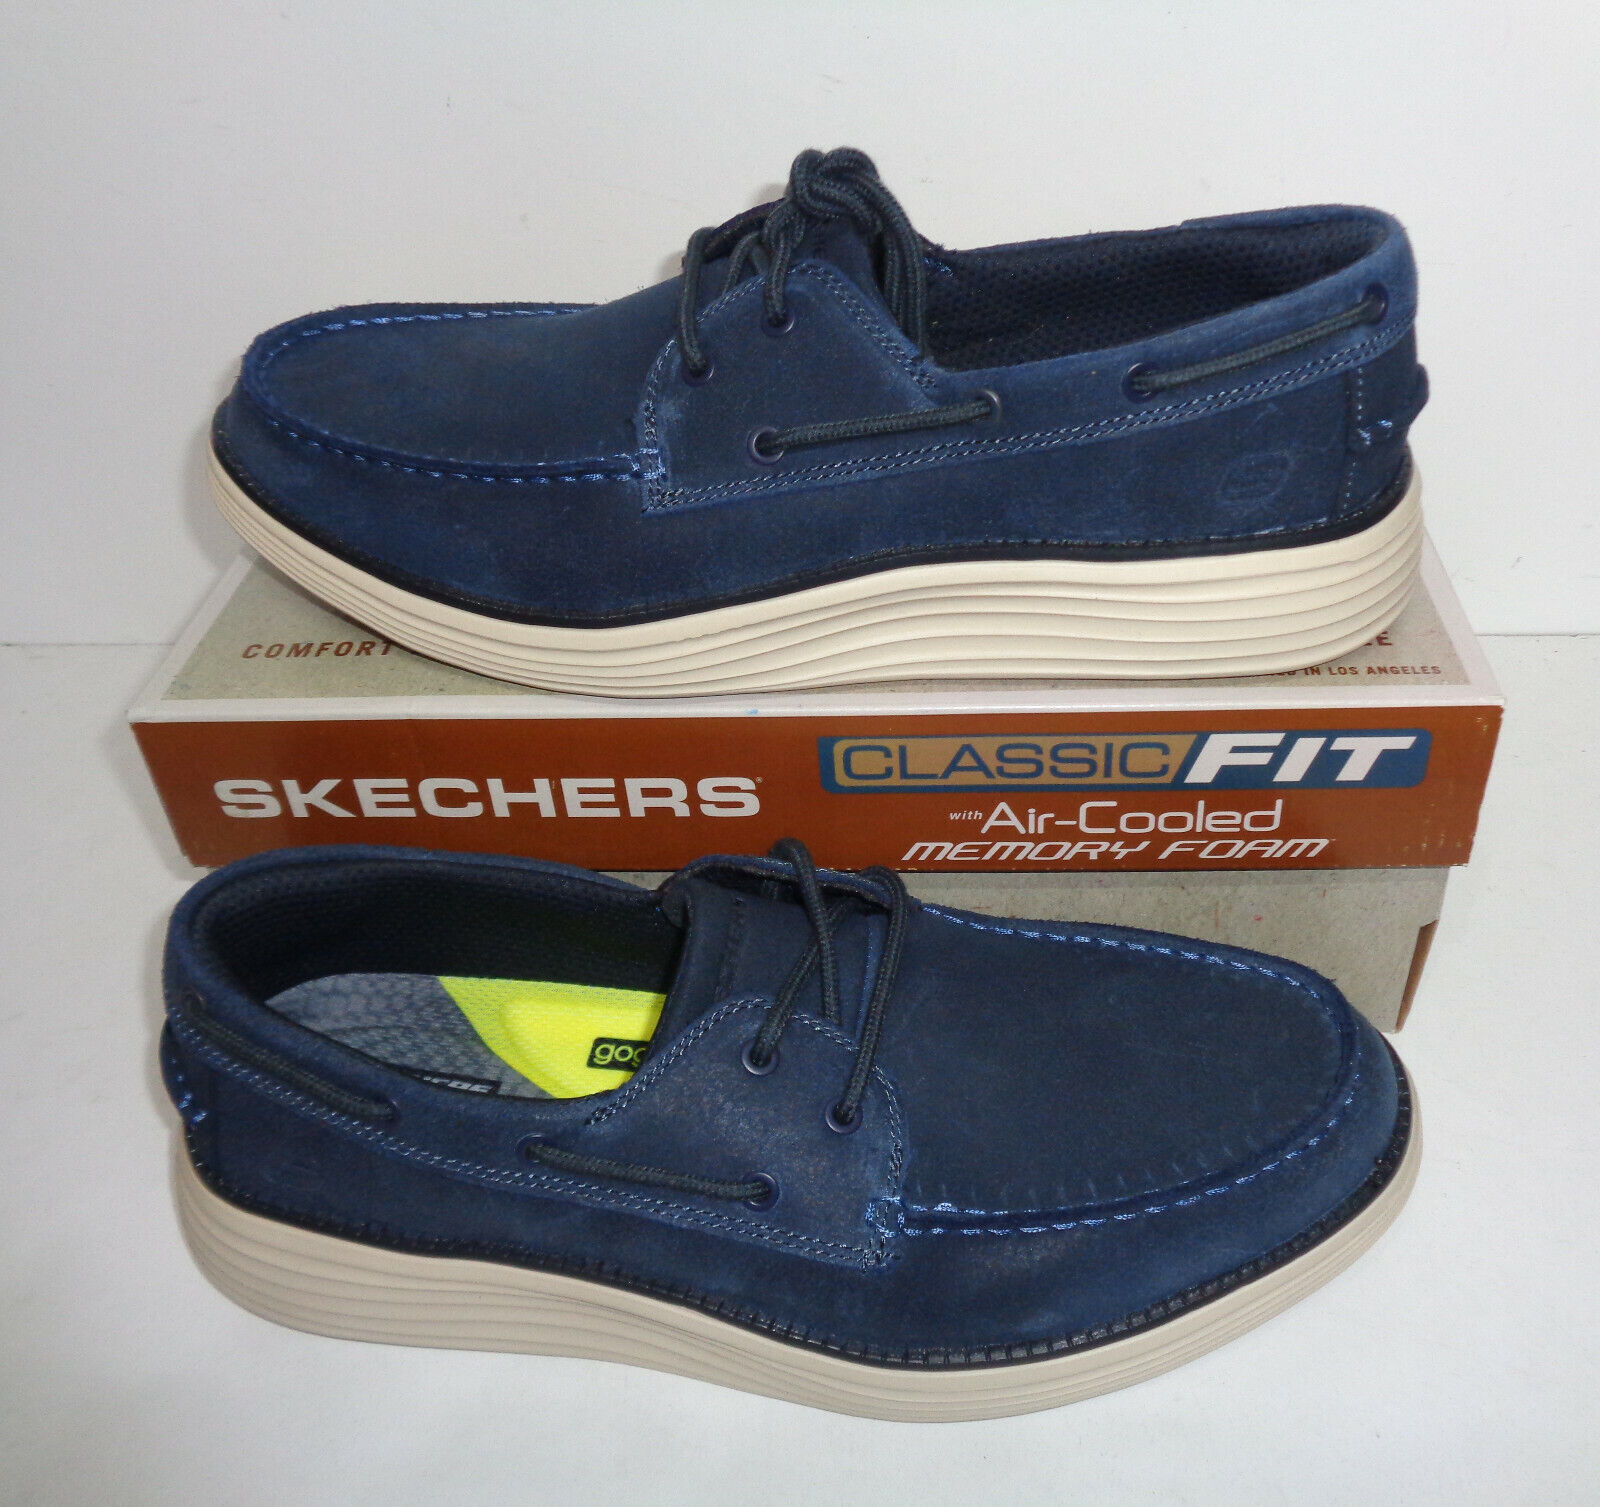 Skechers para hombre espuma viscoelástica mocasines de marino zapatos de barco precio de venta sugerido por el £77 tallas 6-11 | eBay